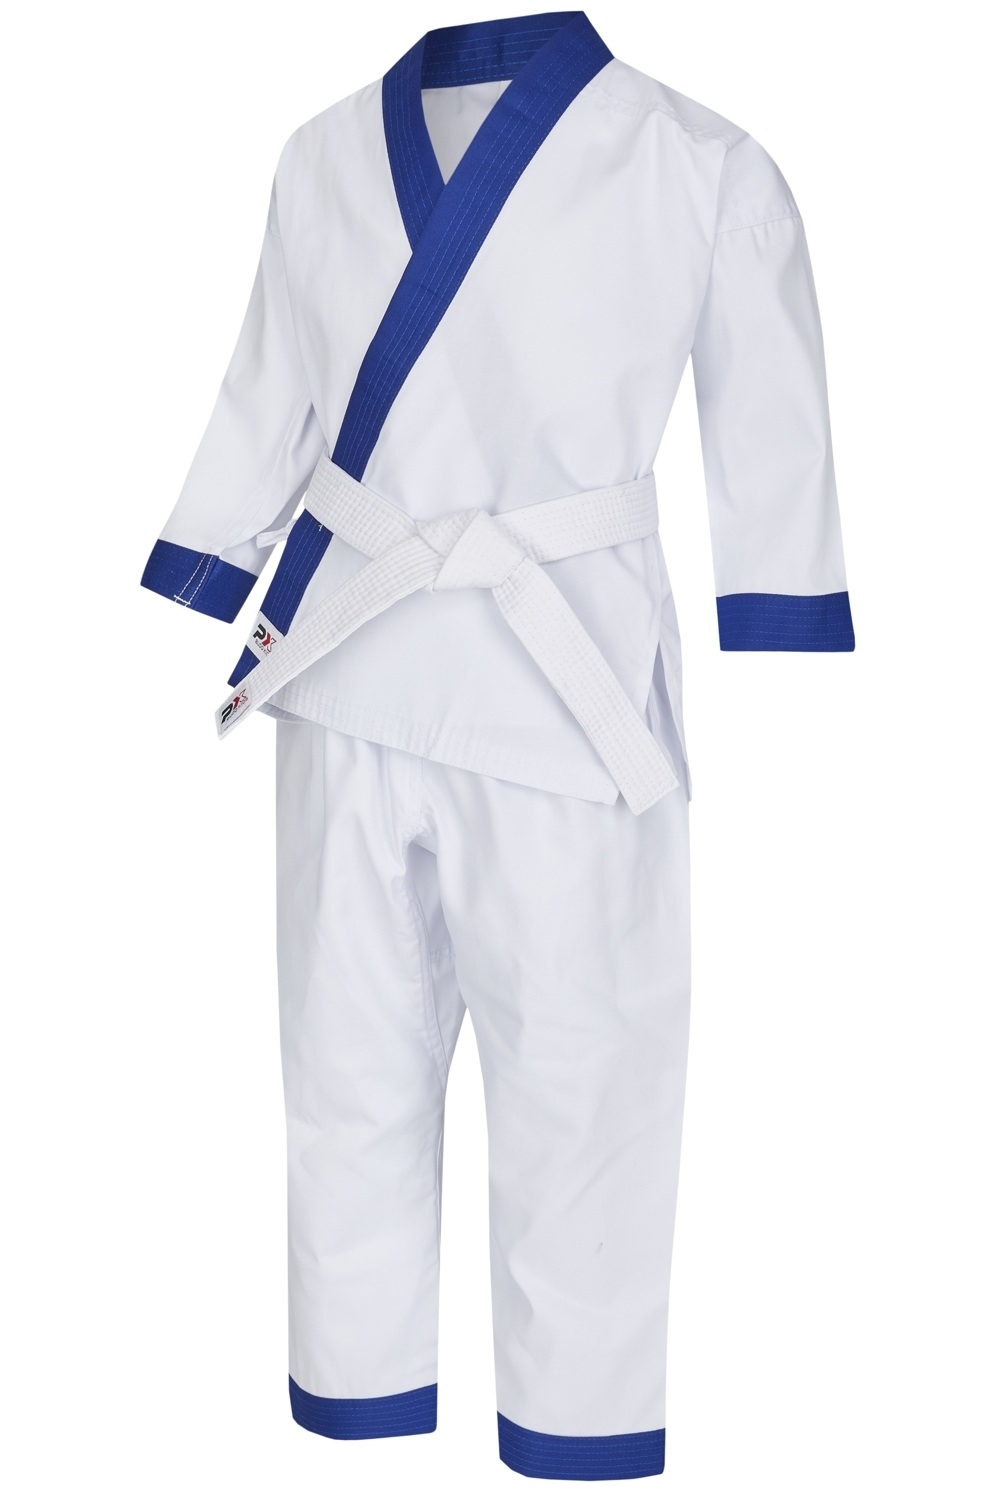 Kinder Karate-Anzug weiß, mit blauem Revers, mit setlicher Schnürung |  Kempo Anzüge / Karate-Anzüge, farbig | Karate | Kampfanzüge | Kleidung |  budokonzept